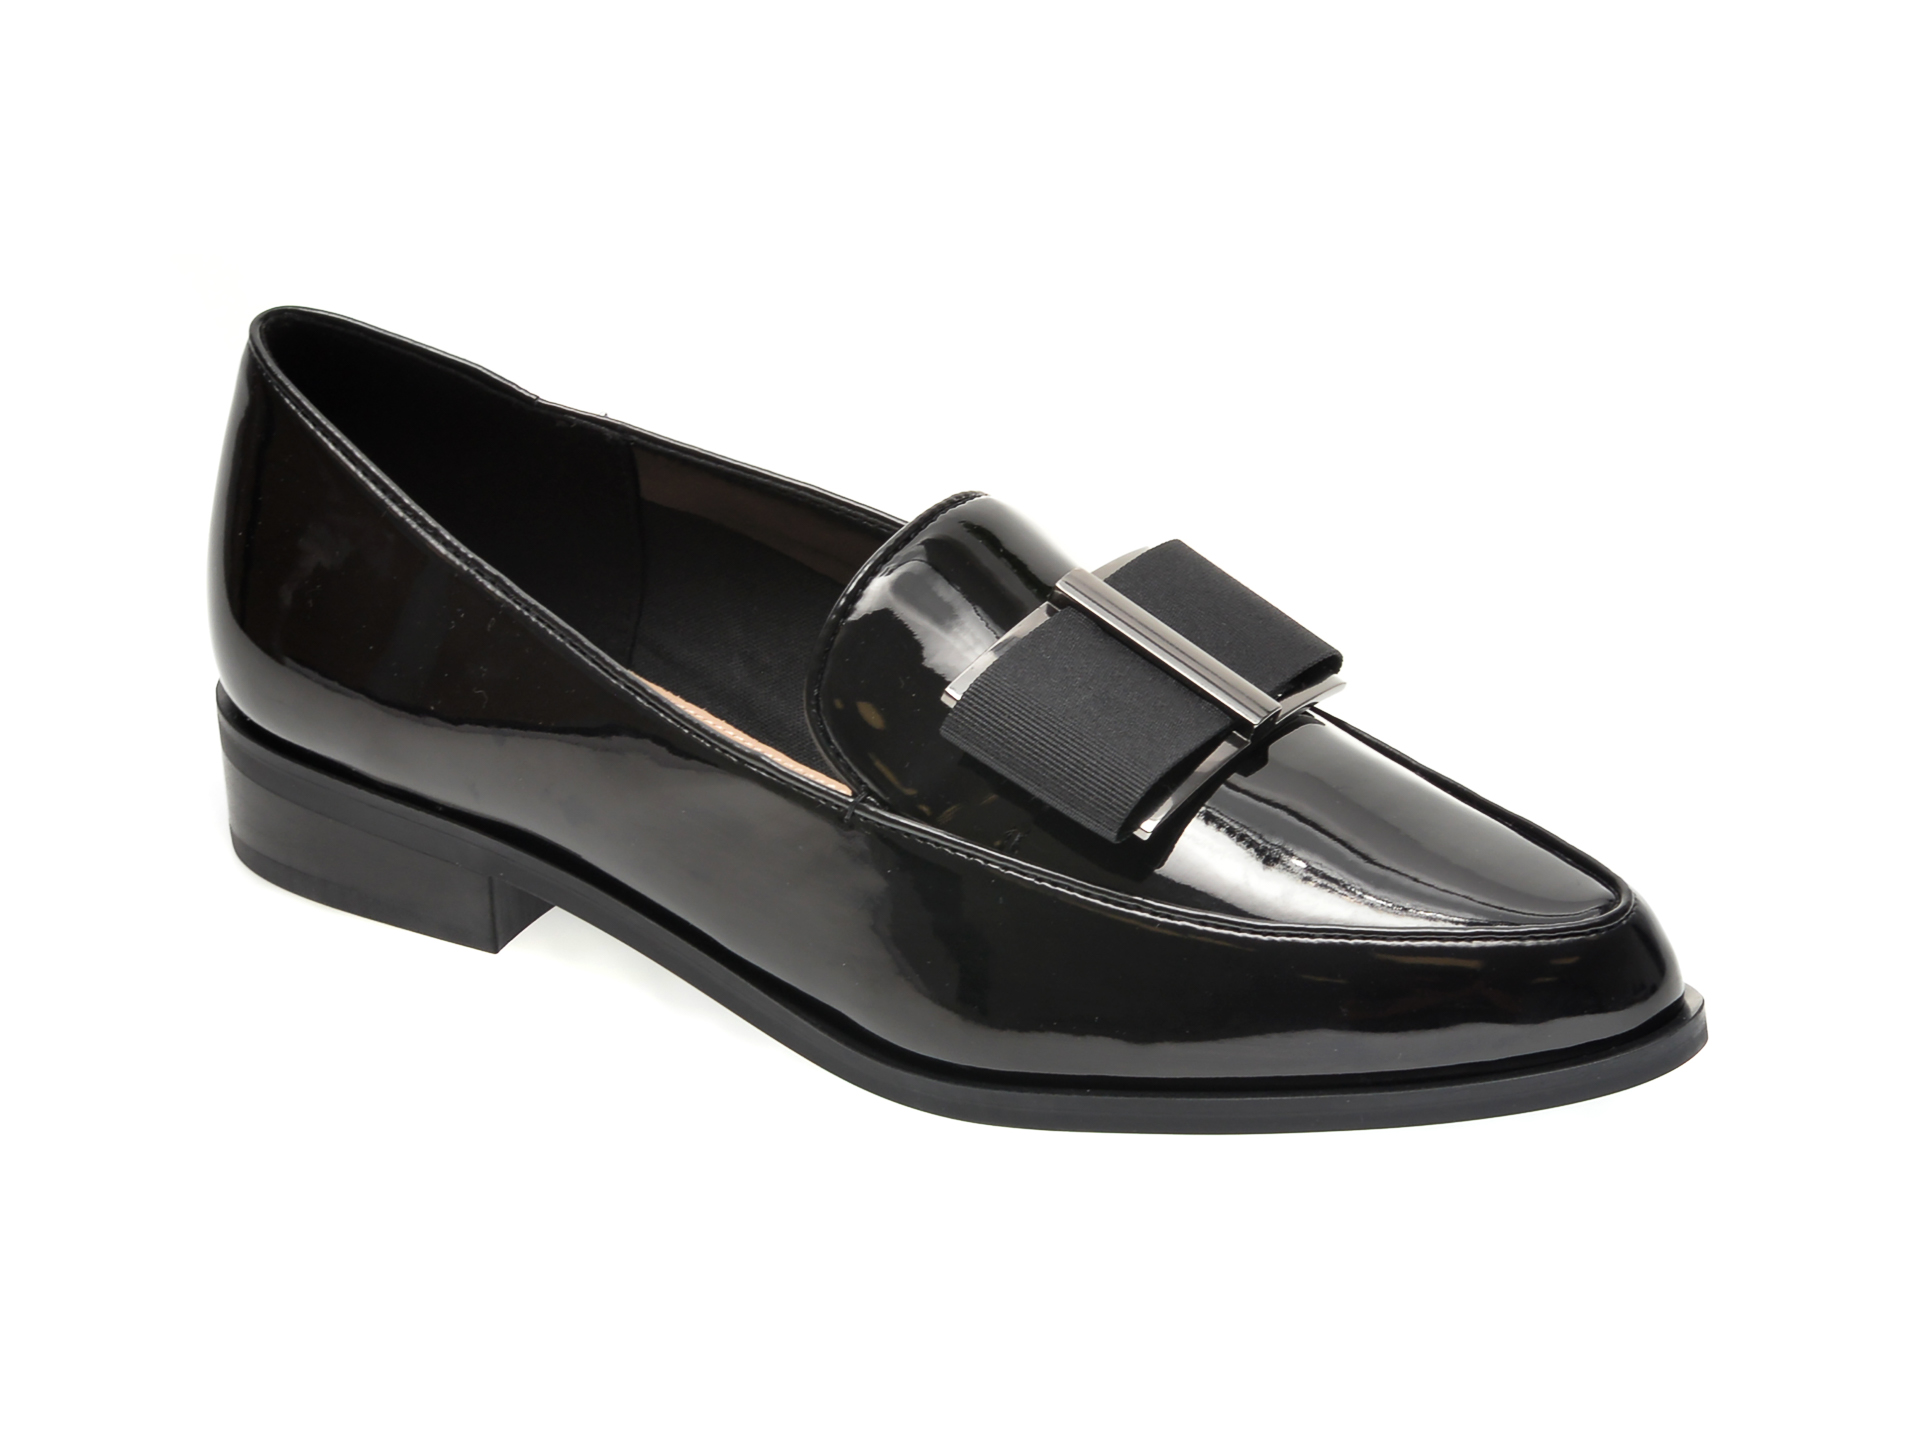 Pantofi ALDO negri, Colette009, din piele ecologica